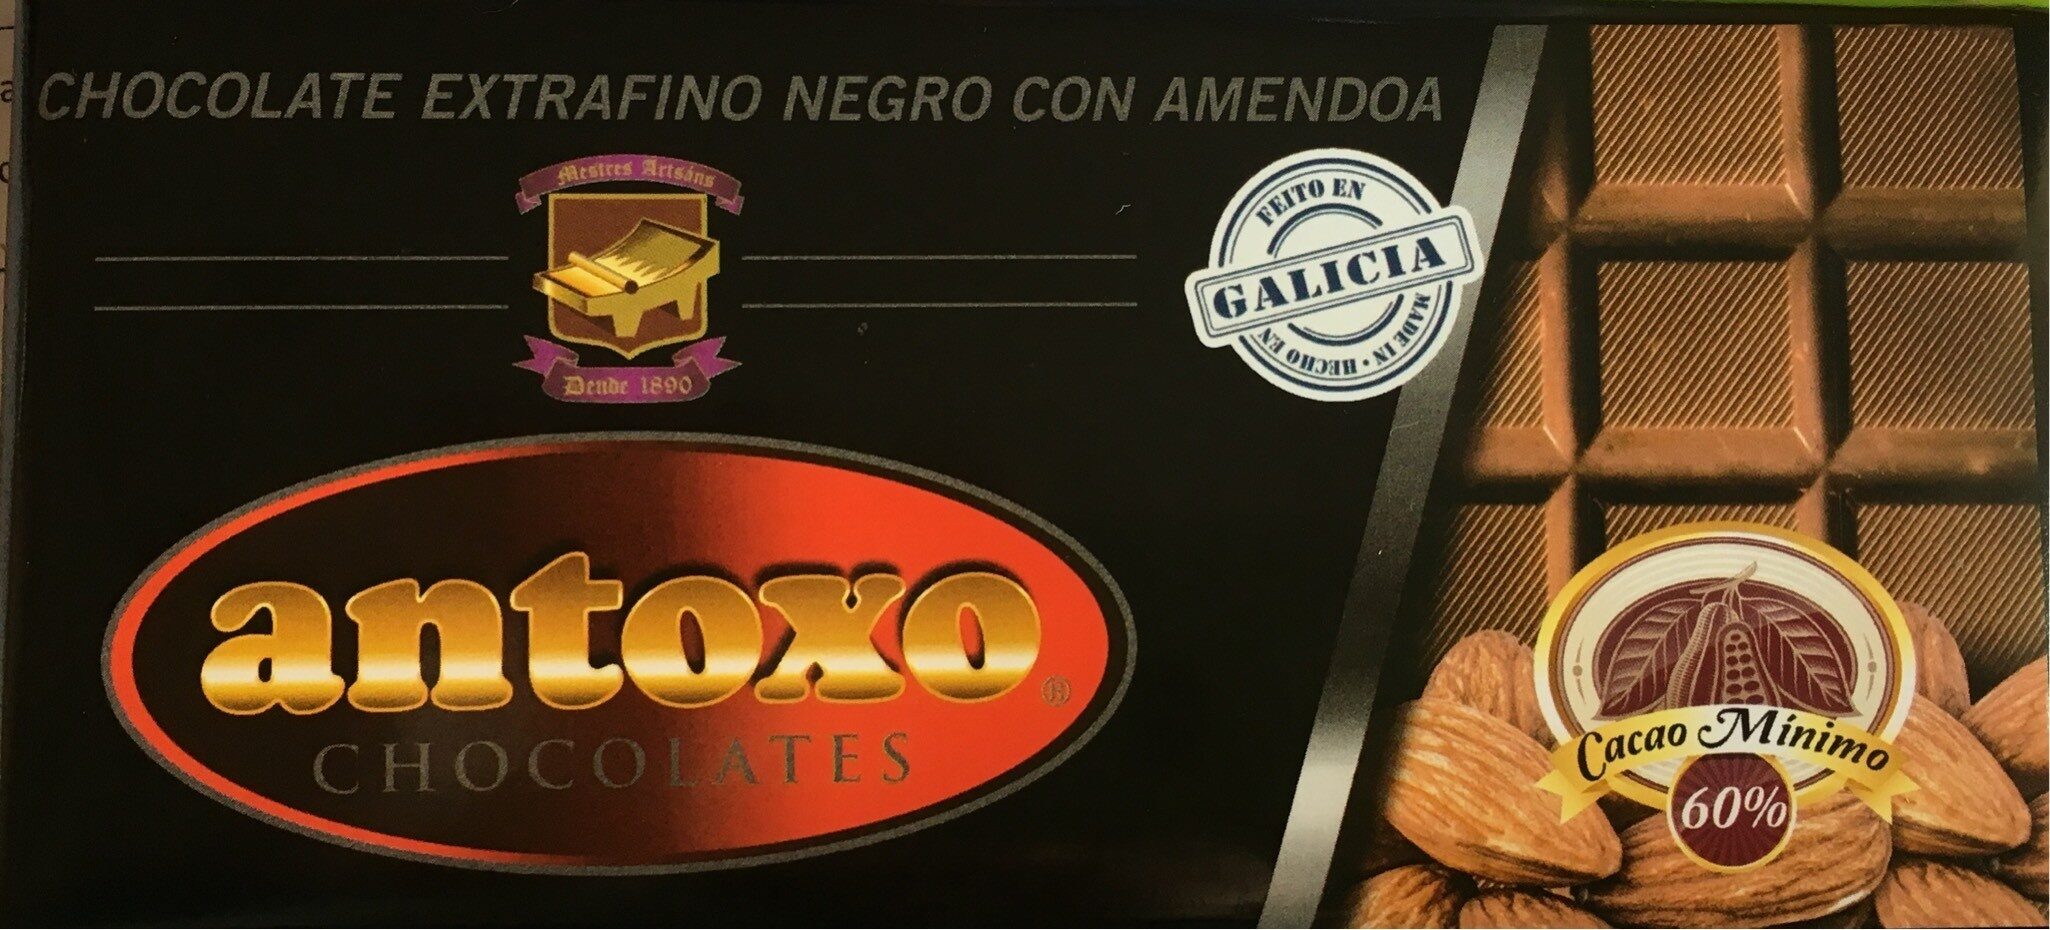 Chocolate extrafino negro con Amendoa - Product - es